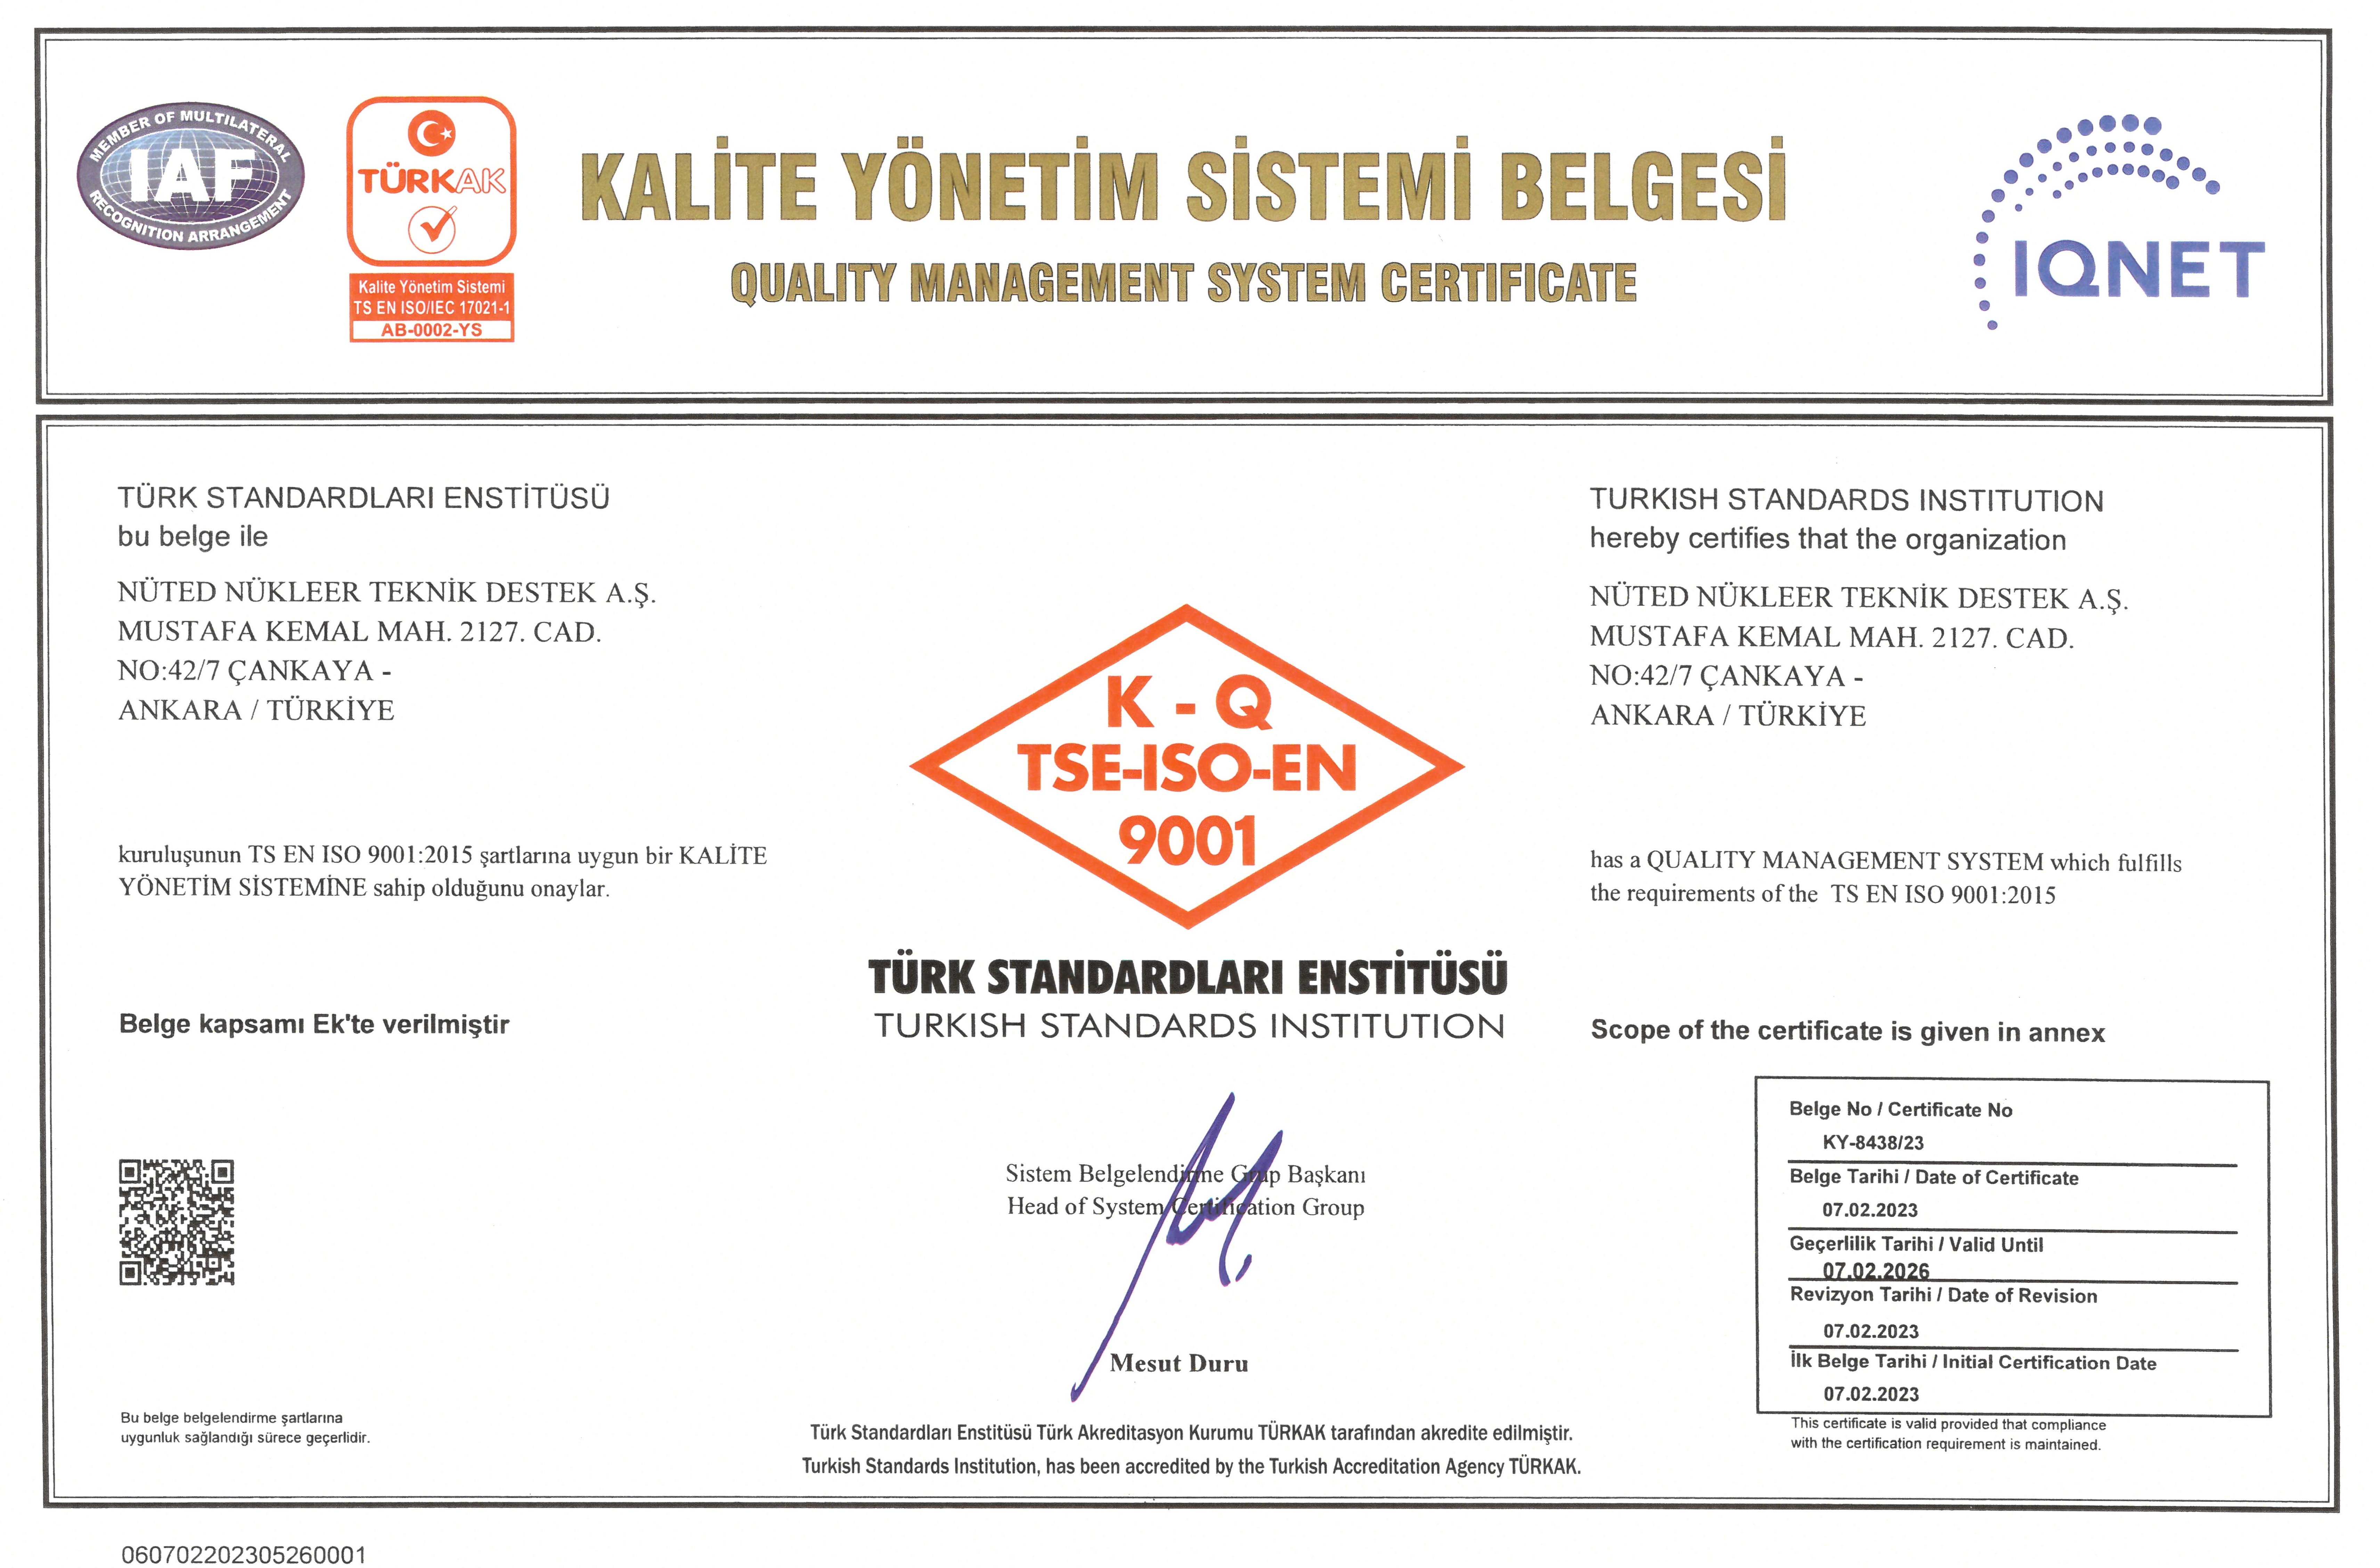 Kuruluşumuz TS EN ISO 9001:2015 standardına göre belgelendirilmiştir.